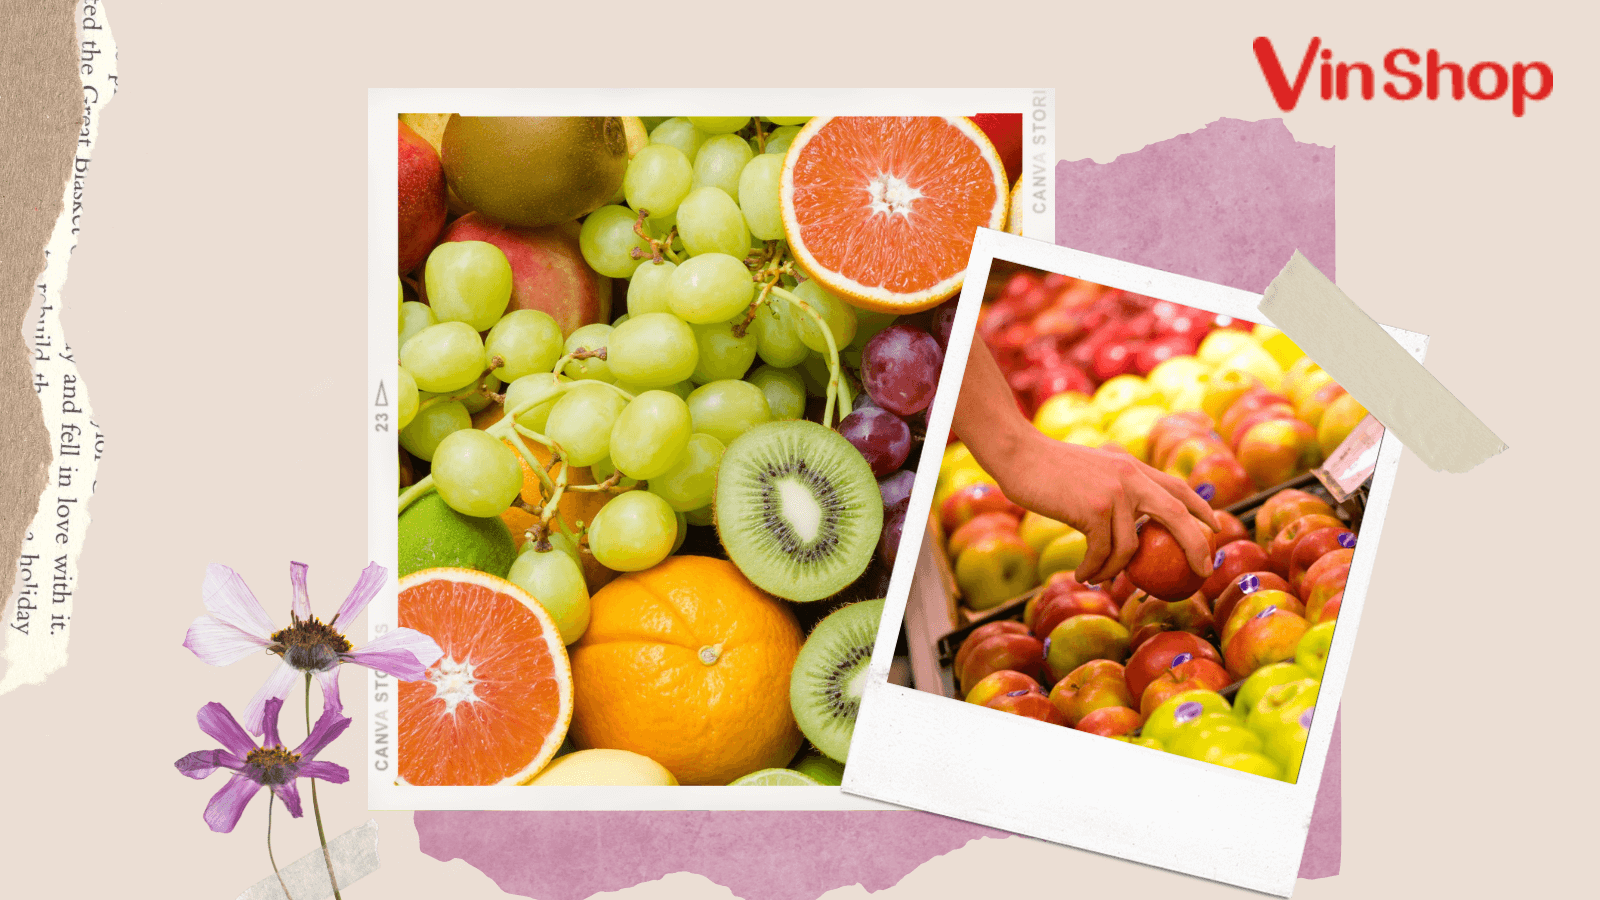 Trái cây sỉ: Với các loại trái cây tươi ngon từ nông trại đến bàn ăn của bạn, chắc chắn rằng bạn sẽ tìm thấy một lựa chọn tốt nhất trong thị trường sỉ của chúng tôi. Hãy xem qua các hình ảnh trái cây tươi ngon và lành mạnh này, bạn sẽ được trải nghiệm một cuộc sống lành mạnh với các loại trái cây tươi ngon.